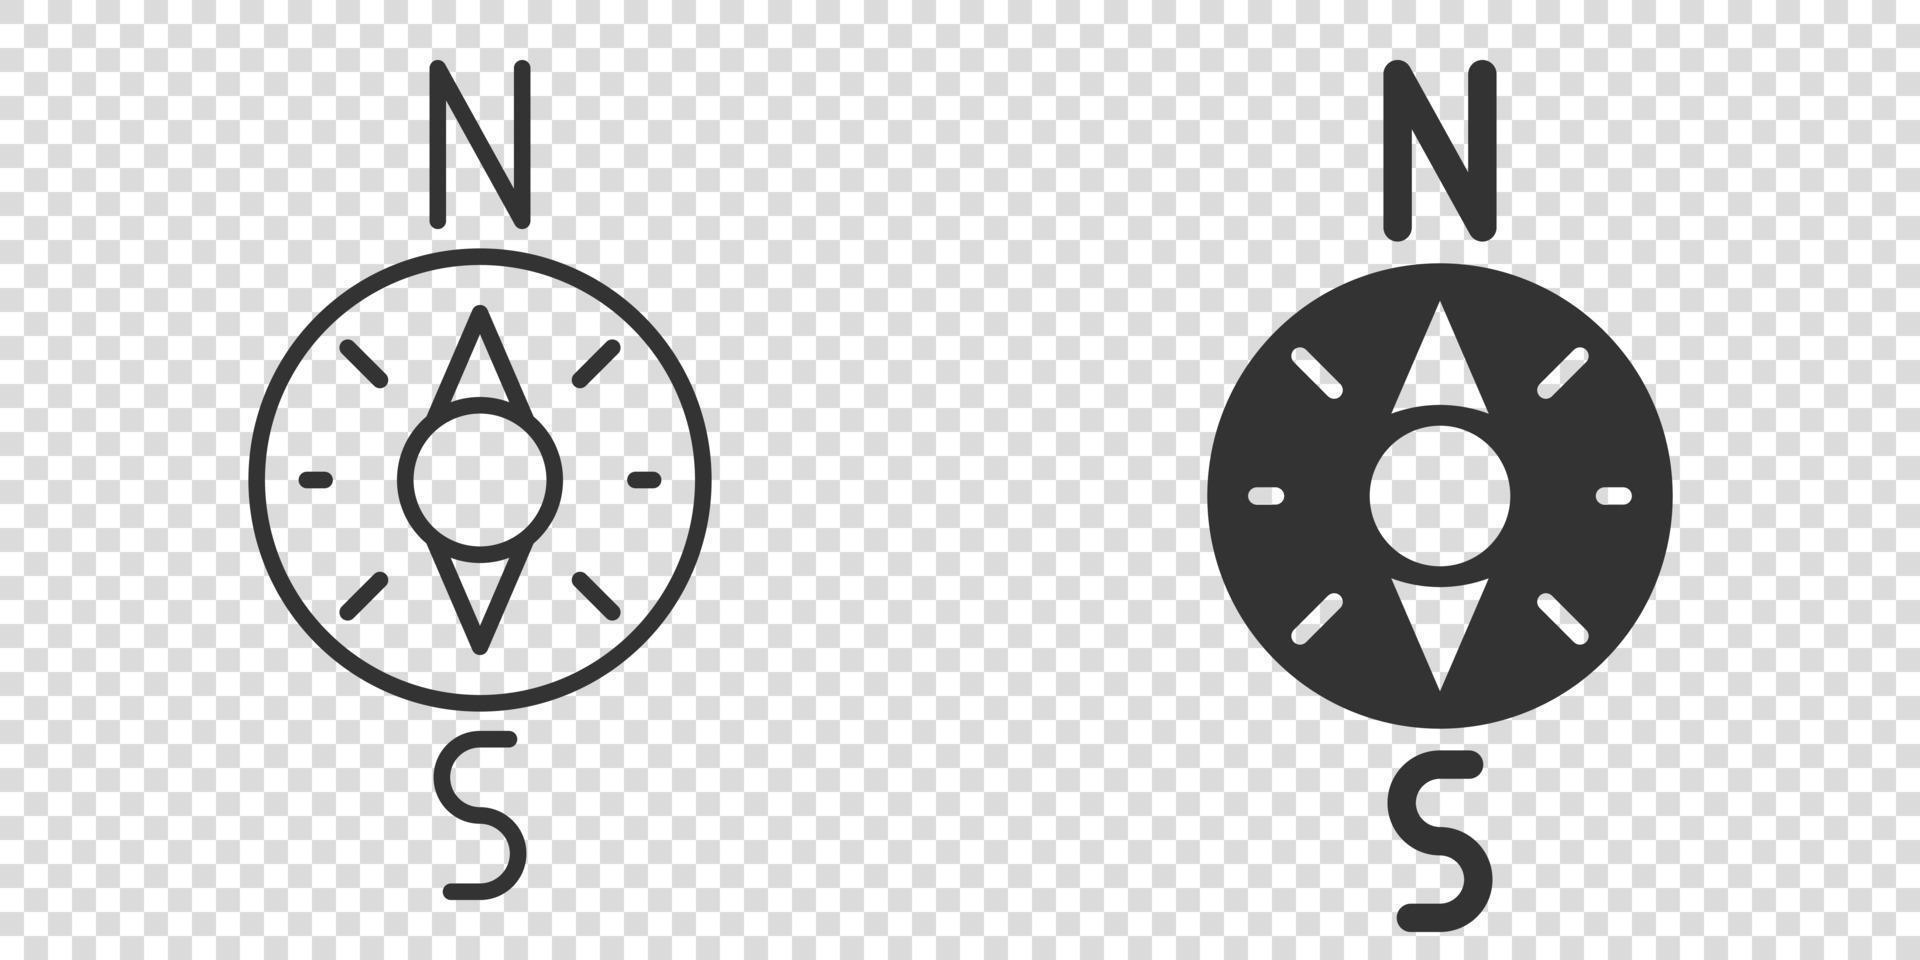 Kompass-Symbol im flachen Stil. Navigationsausrüstungs-Vektorillustration auf weißem lokalisiertem Hintergrund. reiserichtung geschäftskonzept. vektor